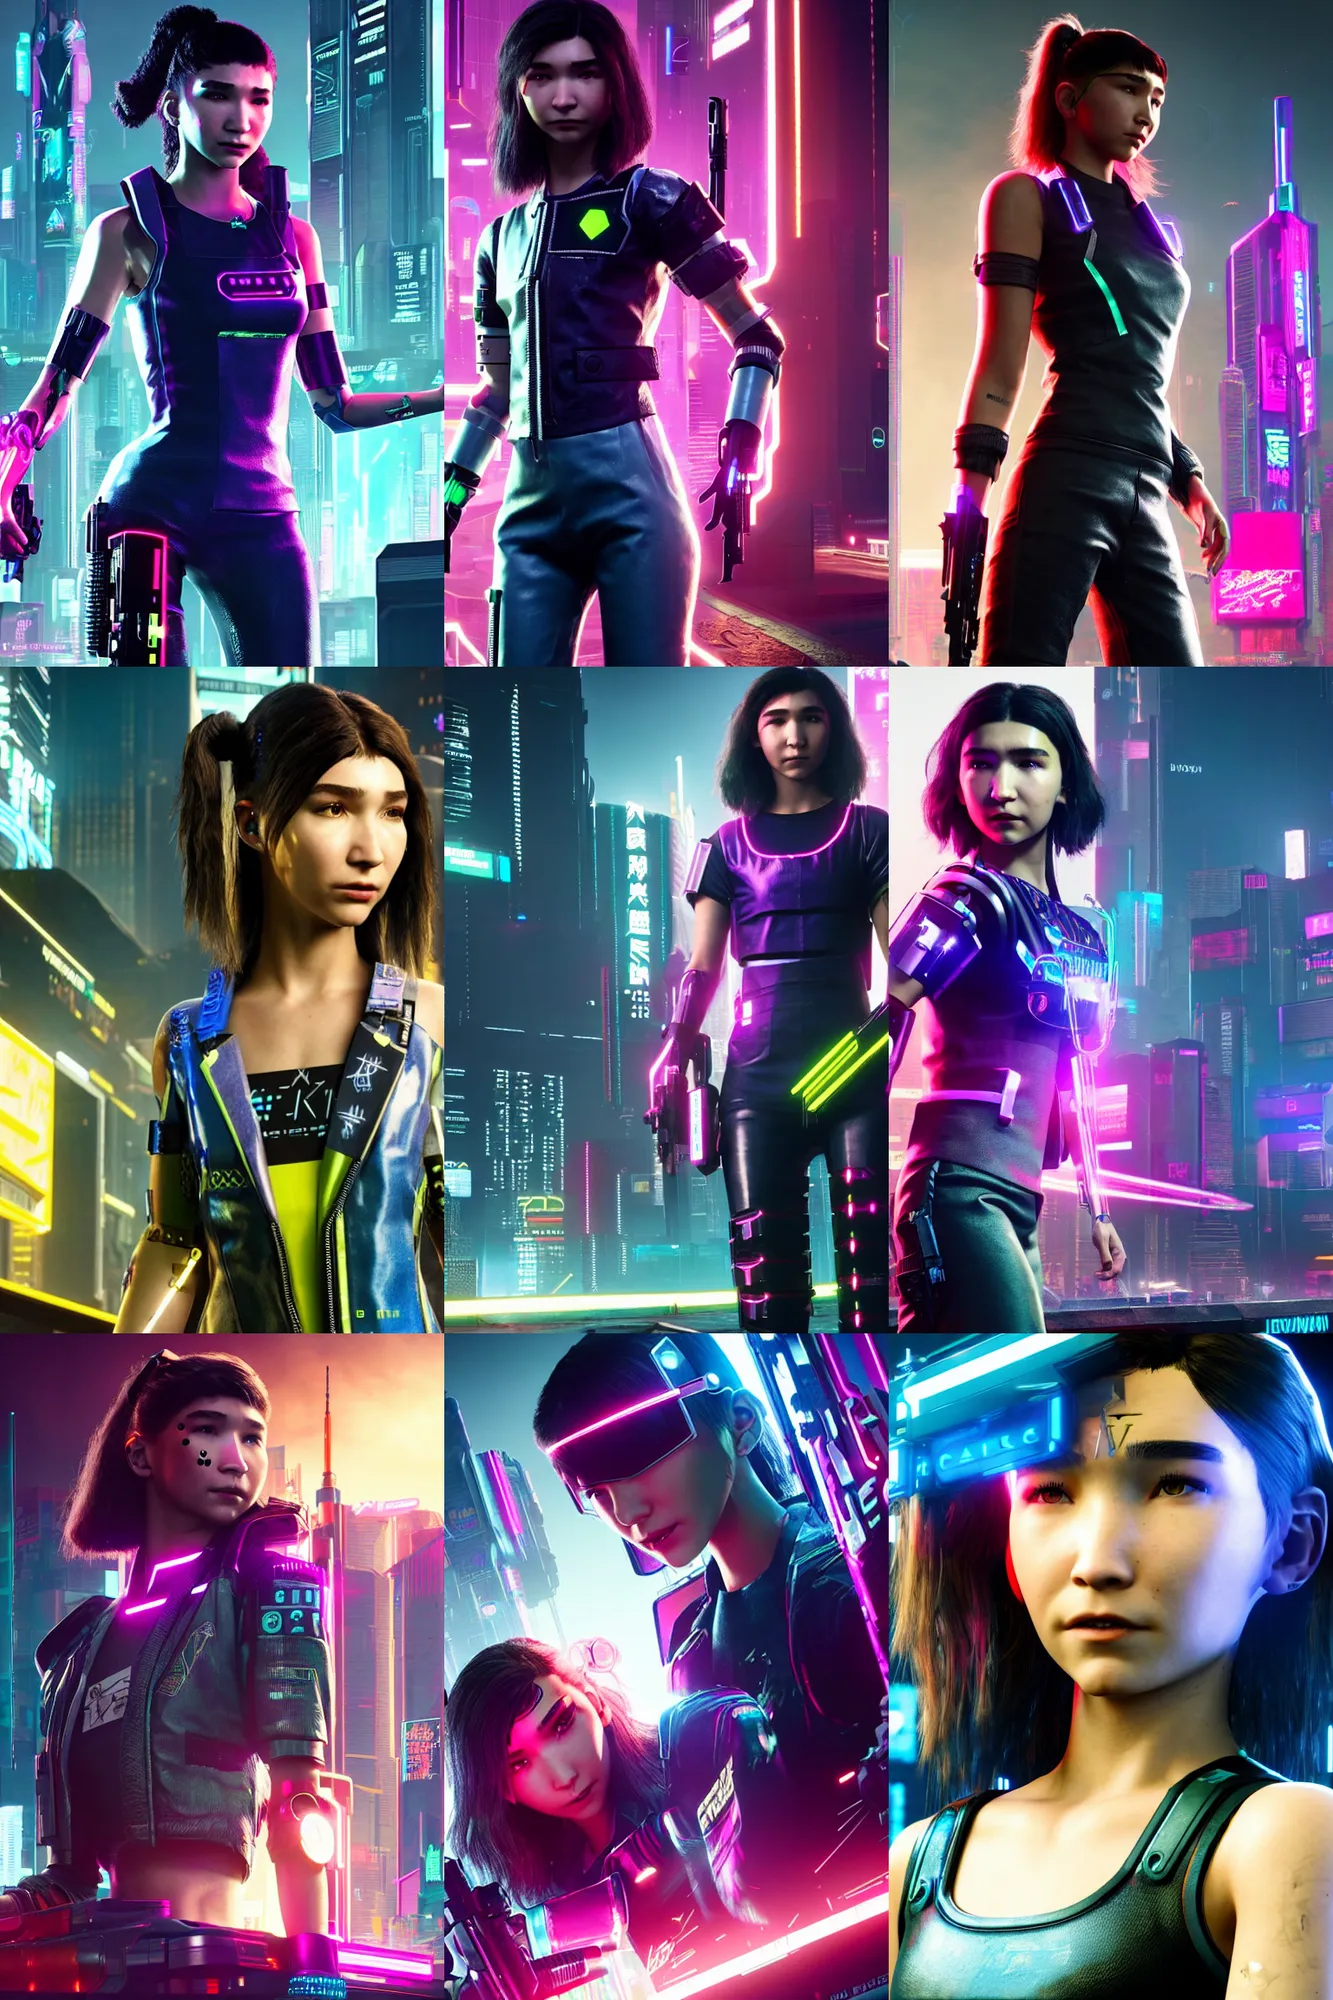 Prompt: Rowan Blanchard as cyber girl in Cyberpunk 2077. In game render